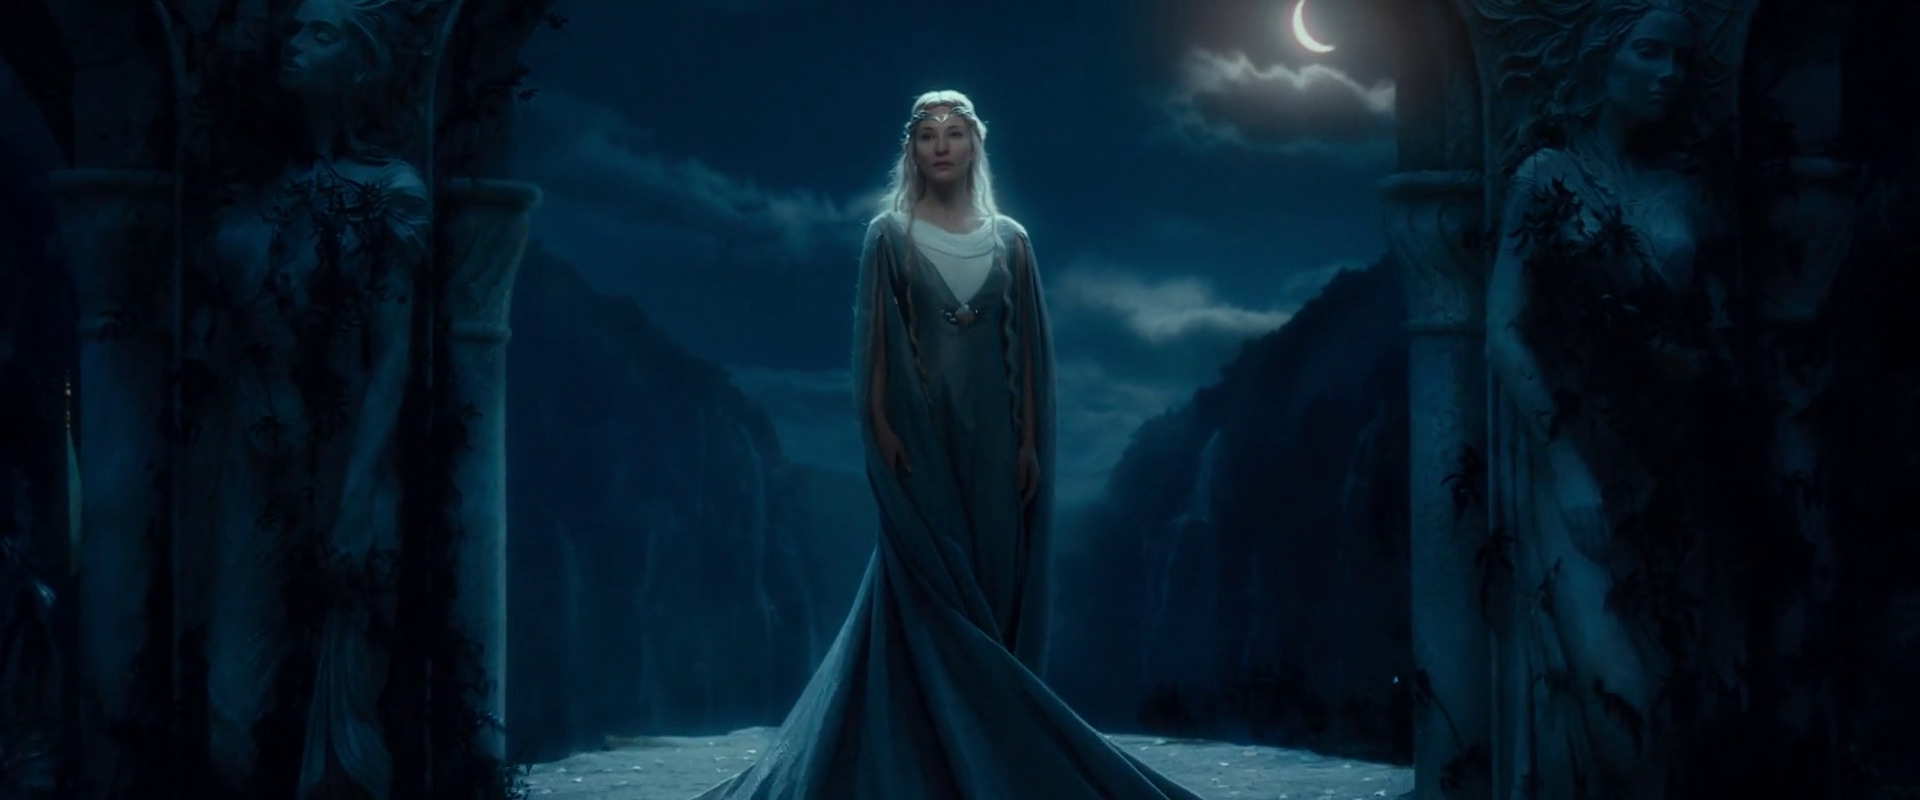 Galadriel, Cate Blanchett, The Hobbit: An Unexpected Journey, Elves, Blonde, Moonlight Wallpaper